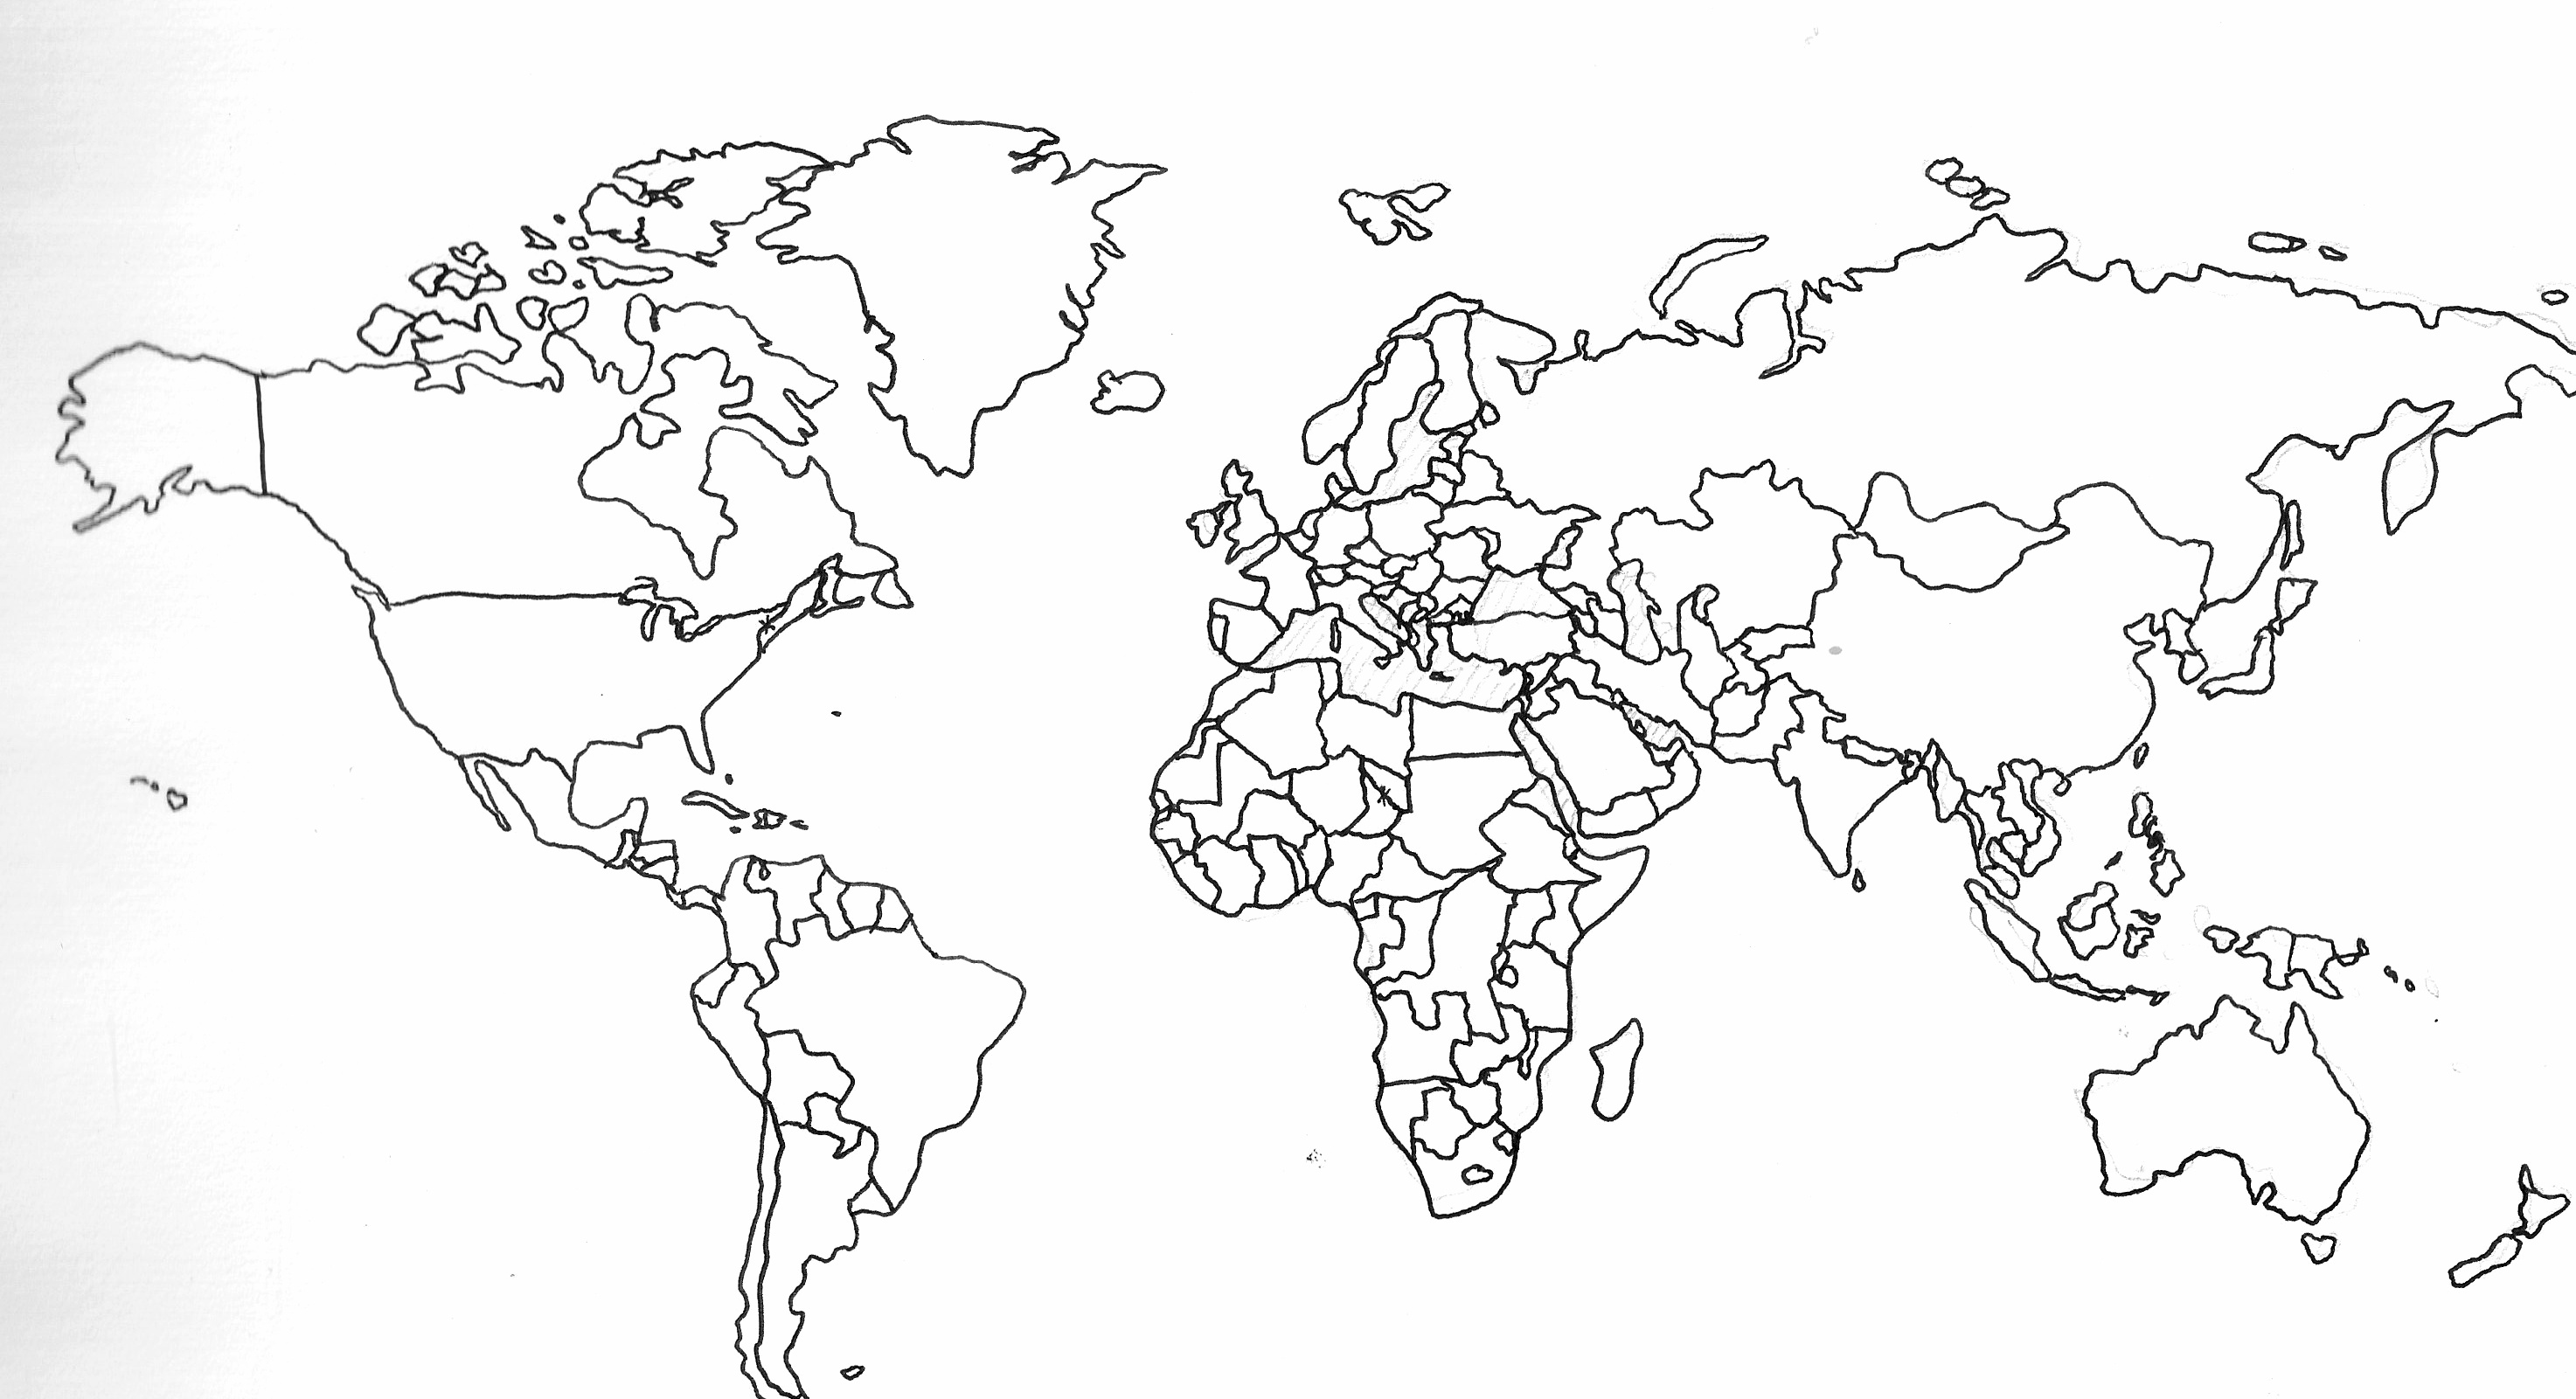 خريطة العالم صماء , اجمل الصور لخريطة العالم الصماء - بنات كول